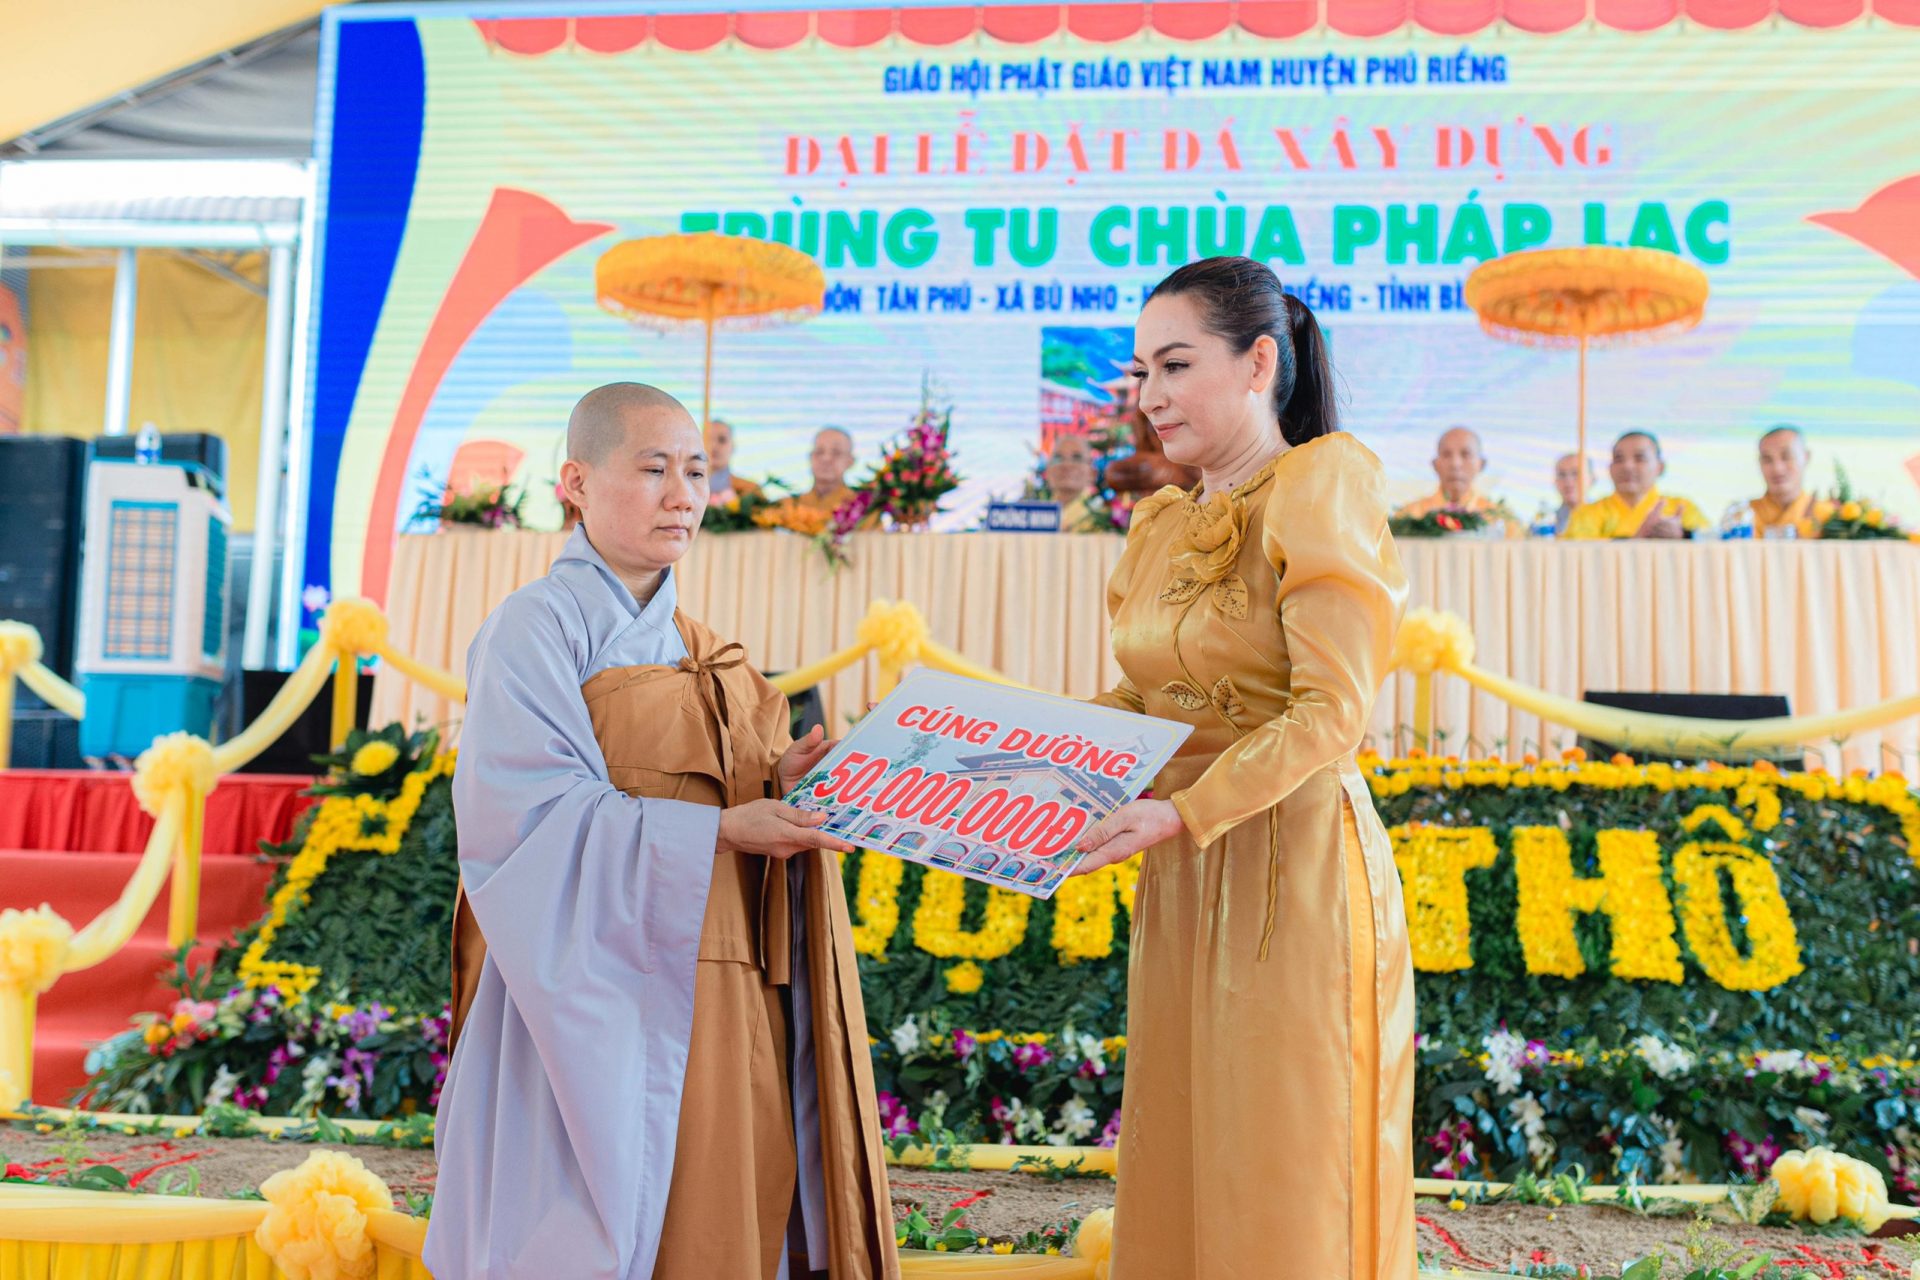 Sư cô Thích Nữ Minh Viên và cố ca sĩ Phi Nhung tại chùa Pháp Lạc